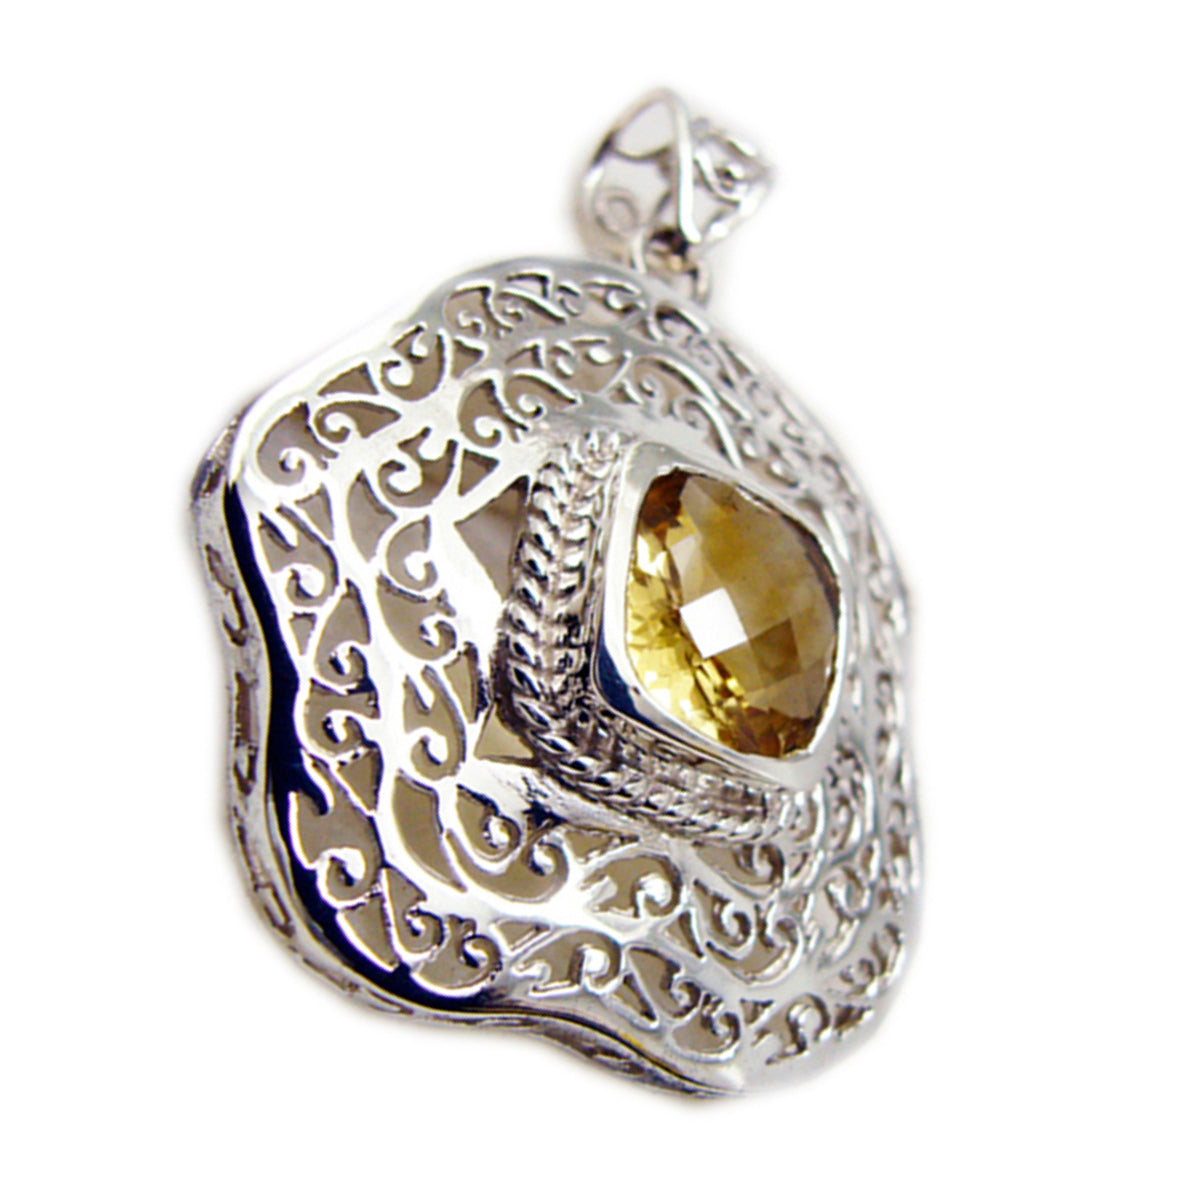 Riyo aantrekkelijk edelsteenkussen geruit geel citrien 996 sterling zilveren hanger cadeau voor vriendin